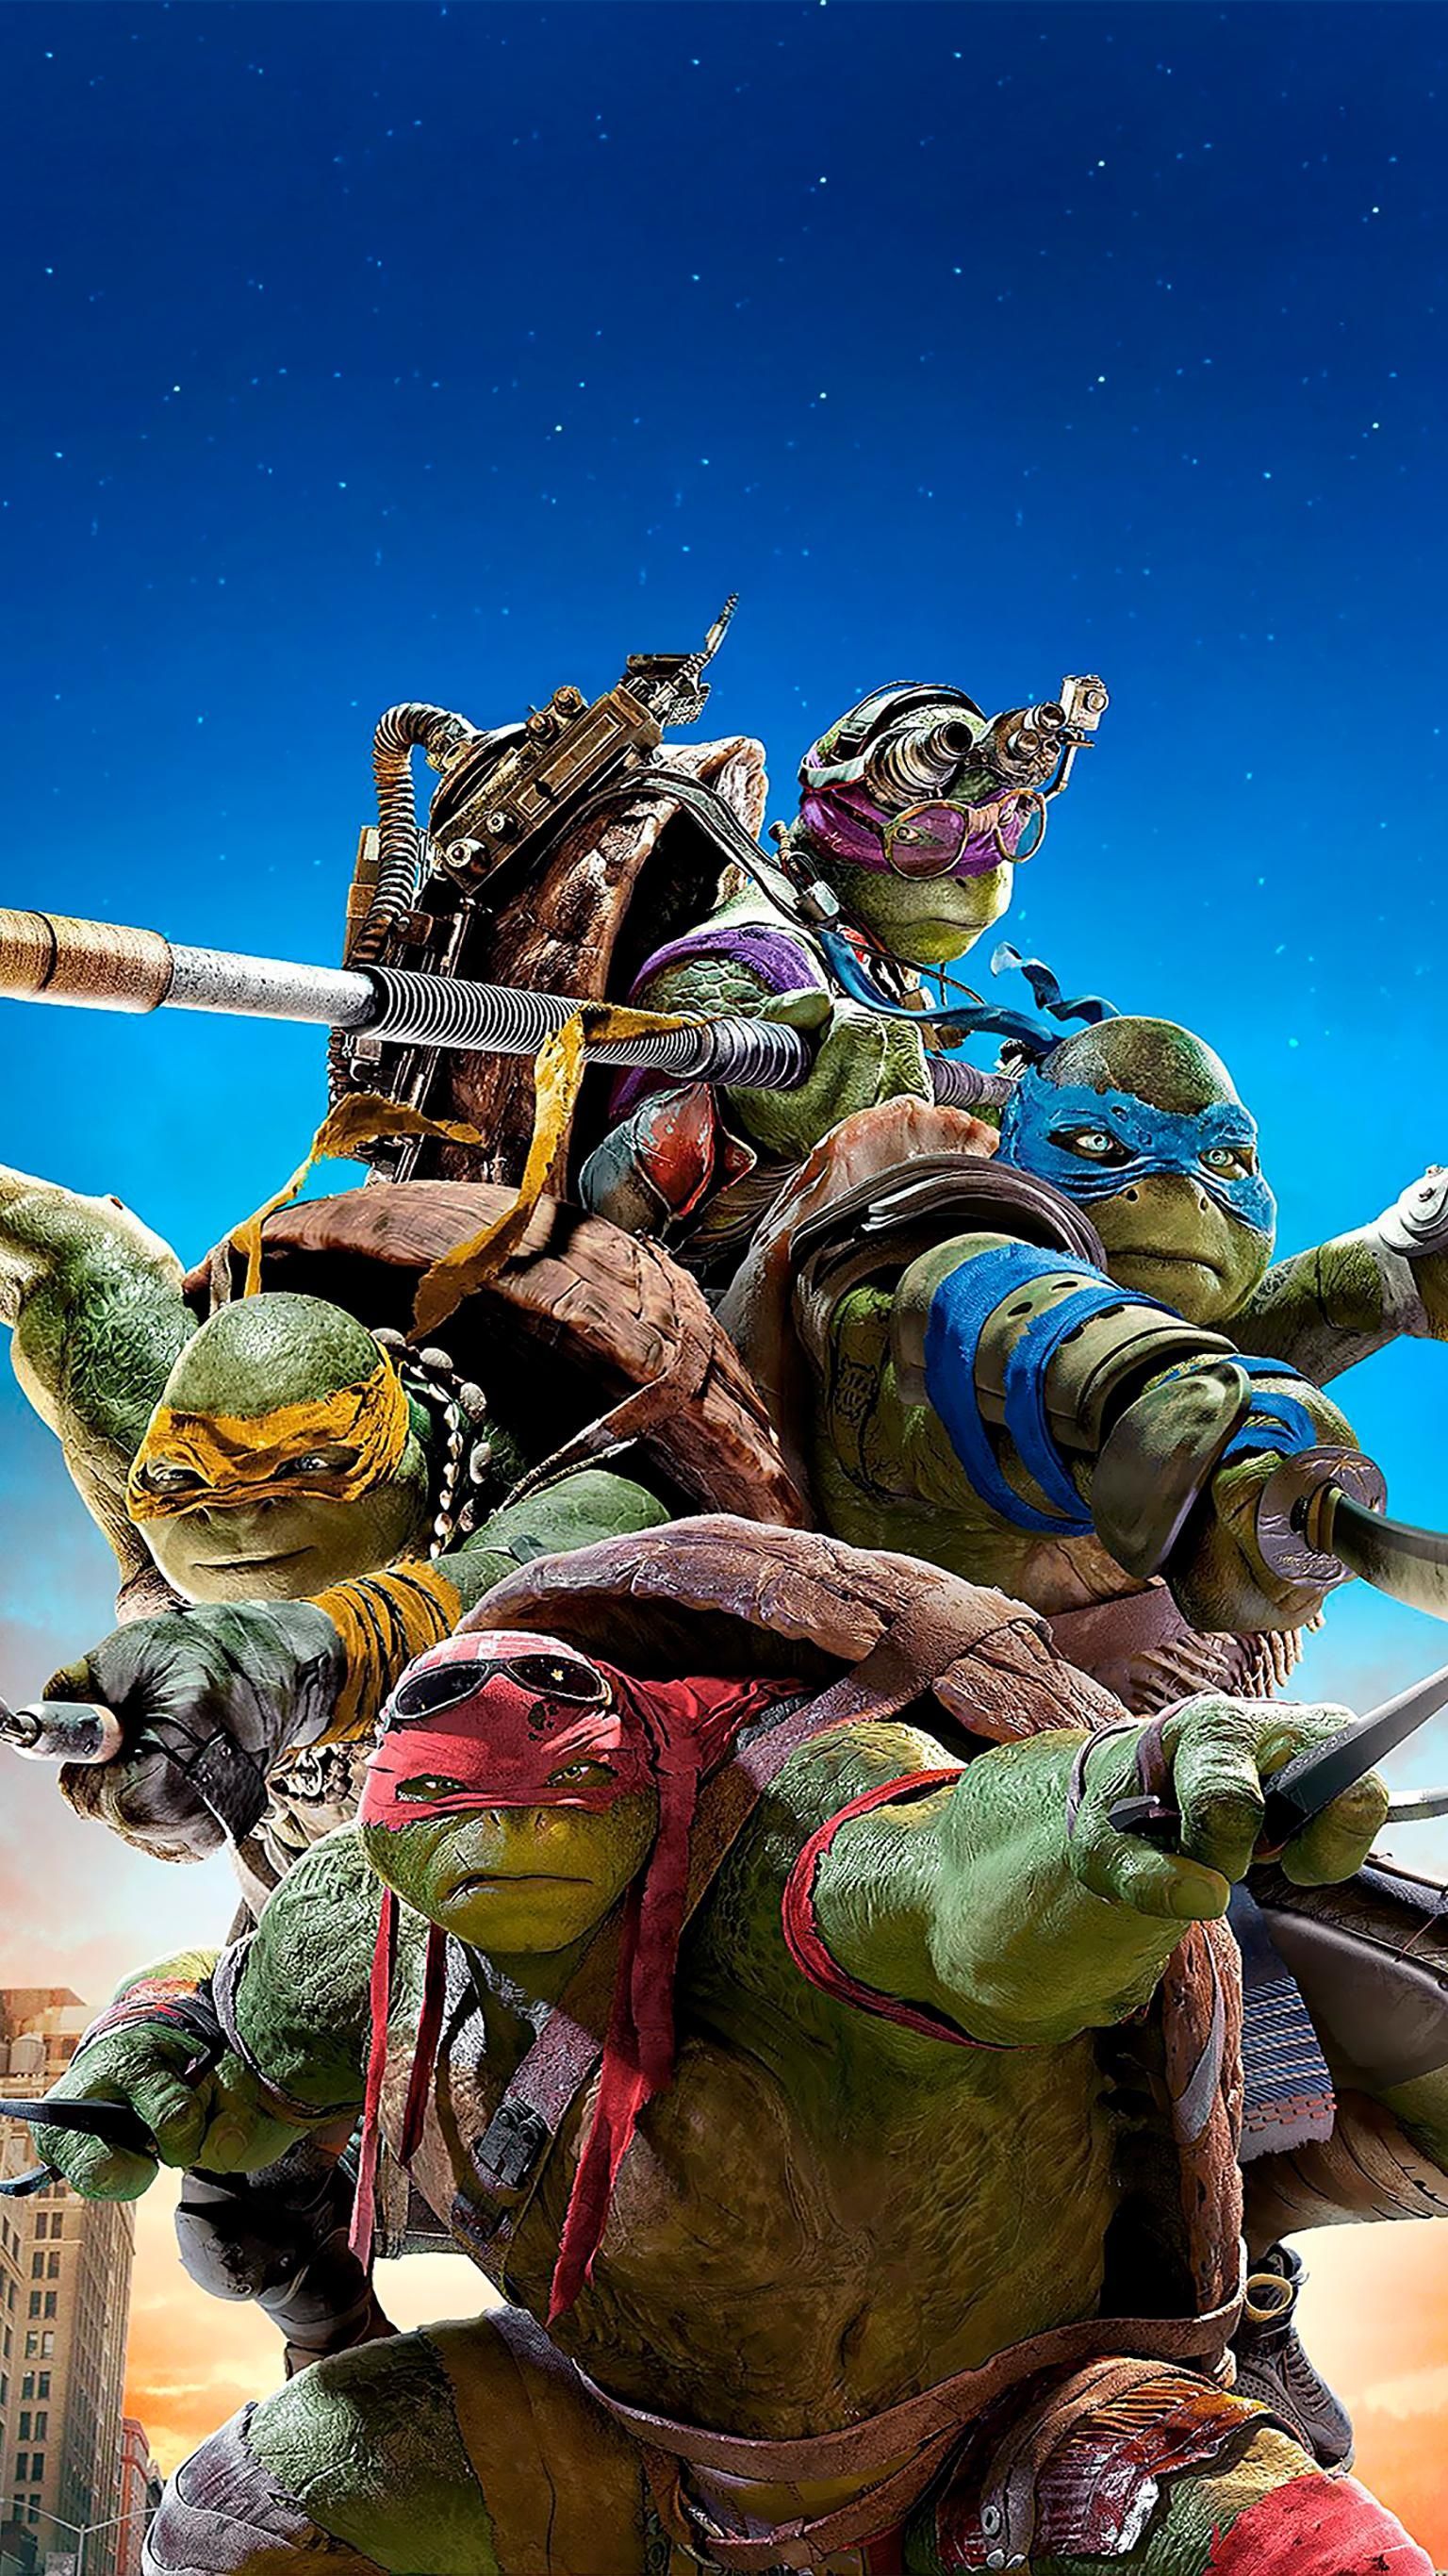 Teenage Mutant Ninja Turtles (2014) Phone Wallpaper. Moviemania. Teenage mutant ninja turtles movie, Ninja turtles movie, Ninja turtles 2014